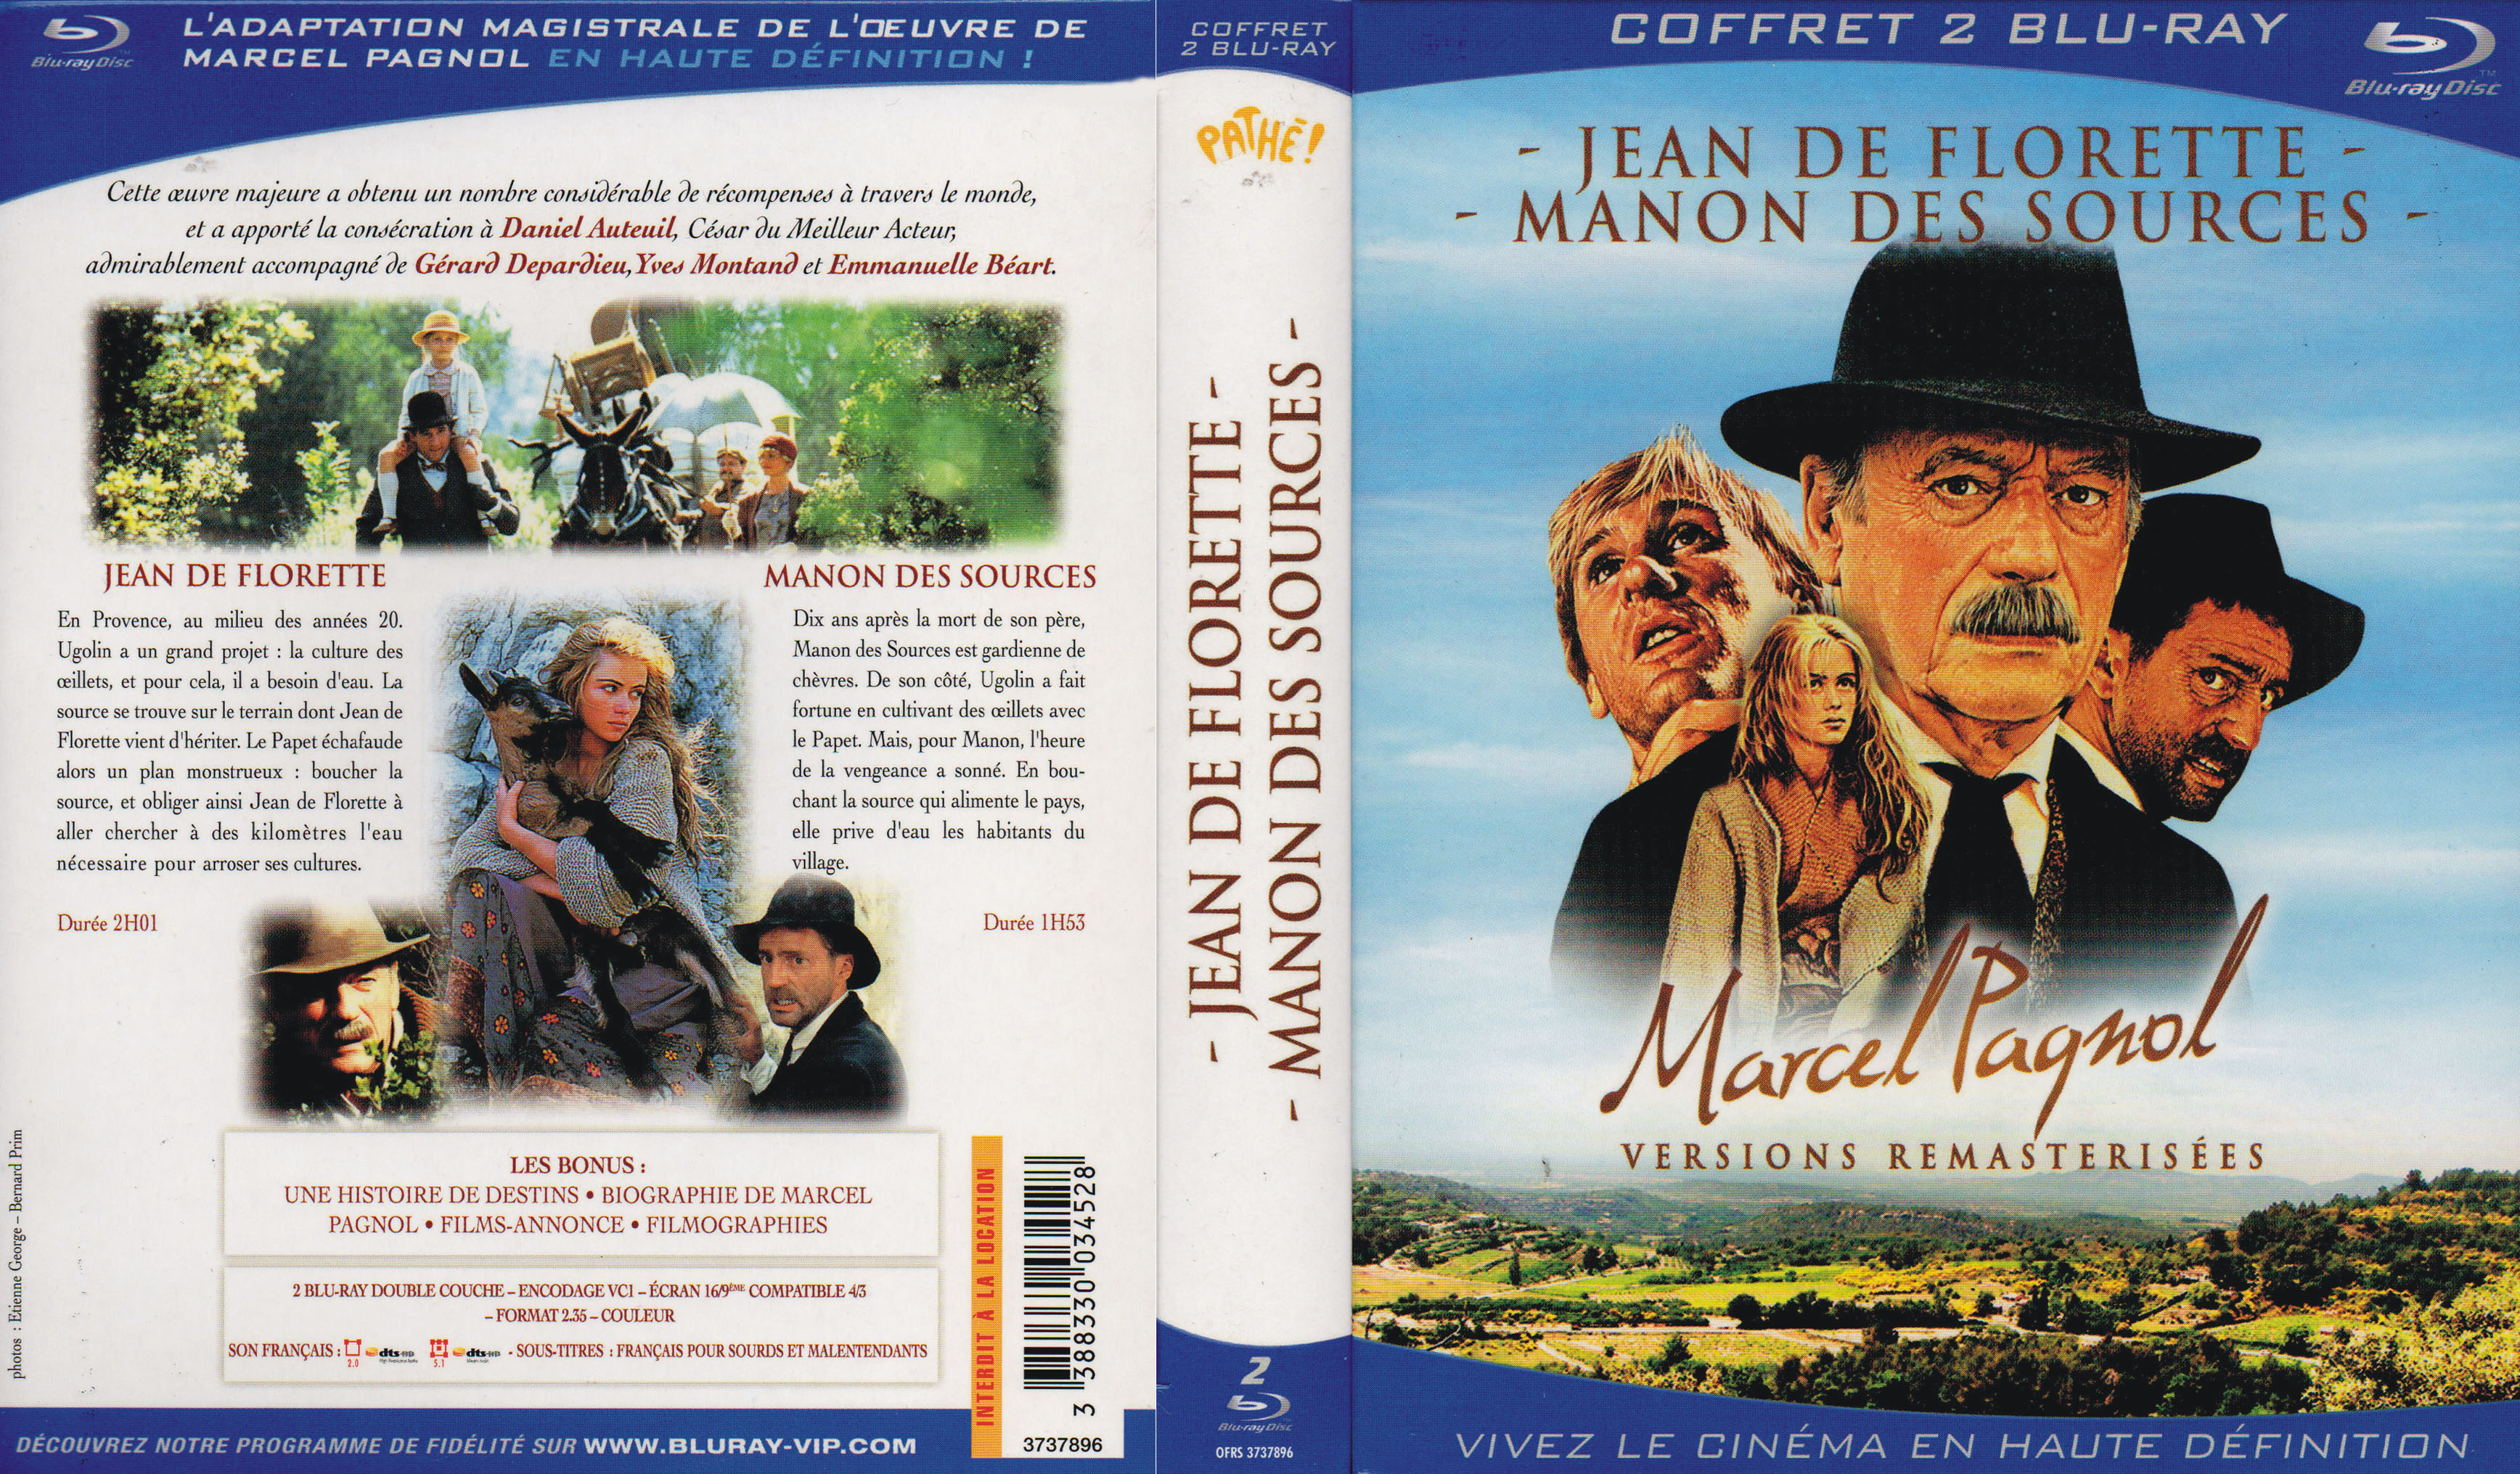 Jaquette DVD Jean de Florette - Manon des sources COFFRET (BLU-RAY)